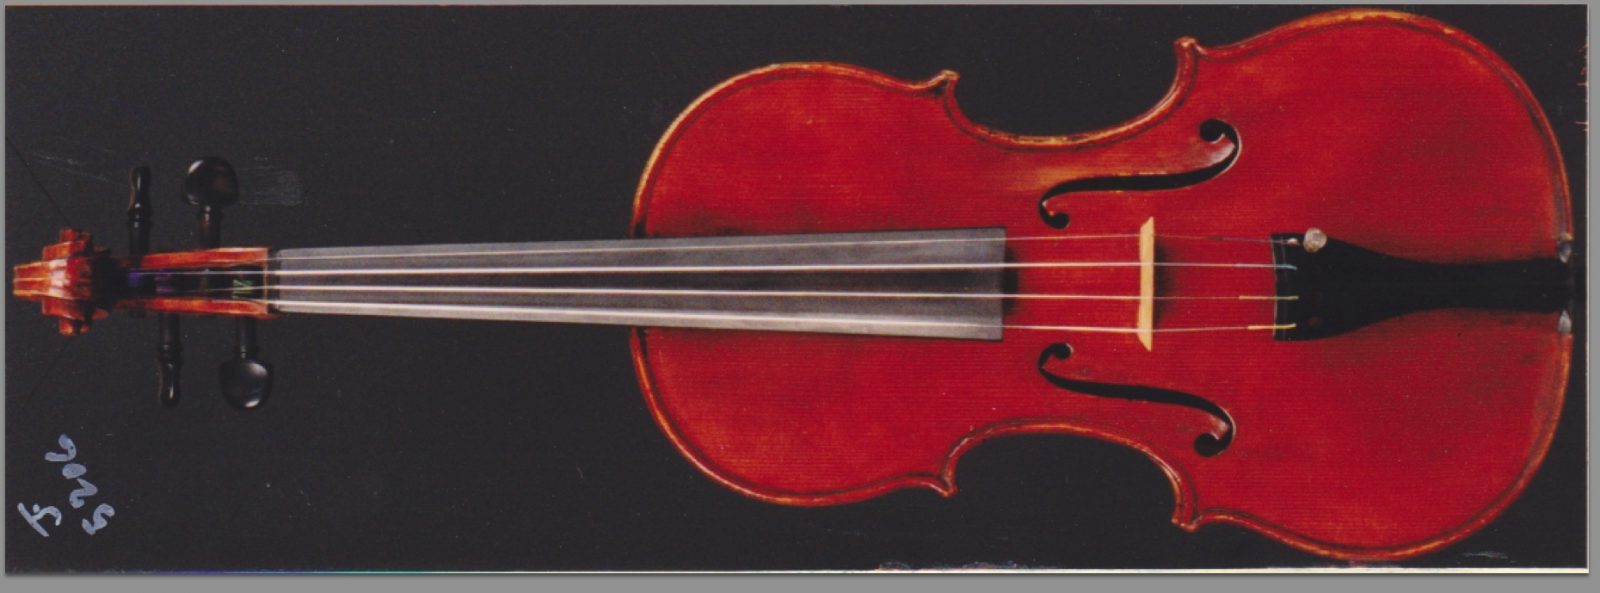 Stolen Violin Georgetown Washington Gaetano Sgarabotto